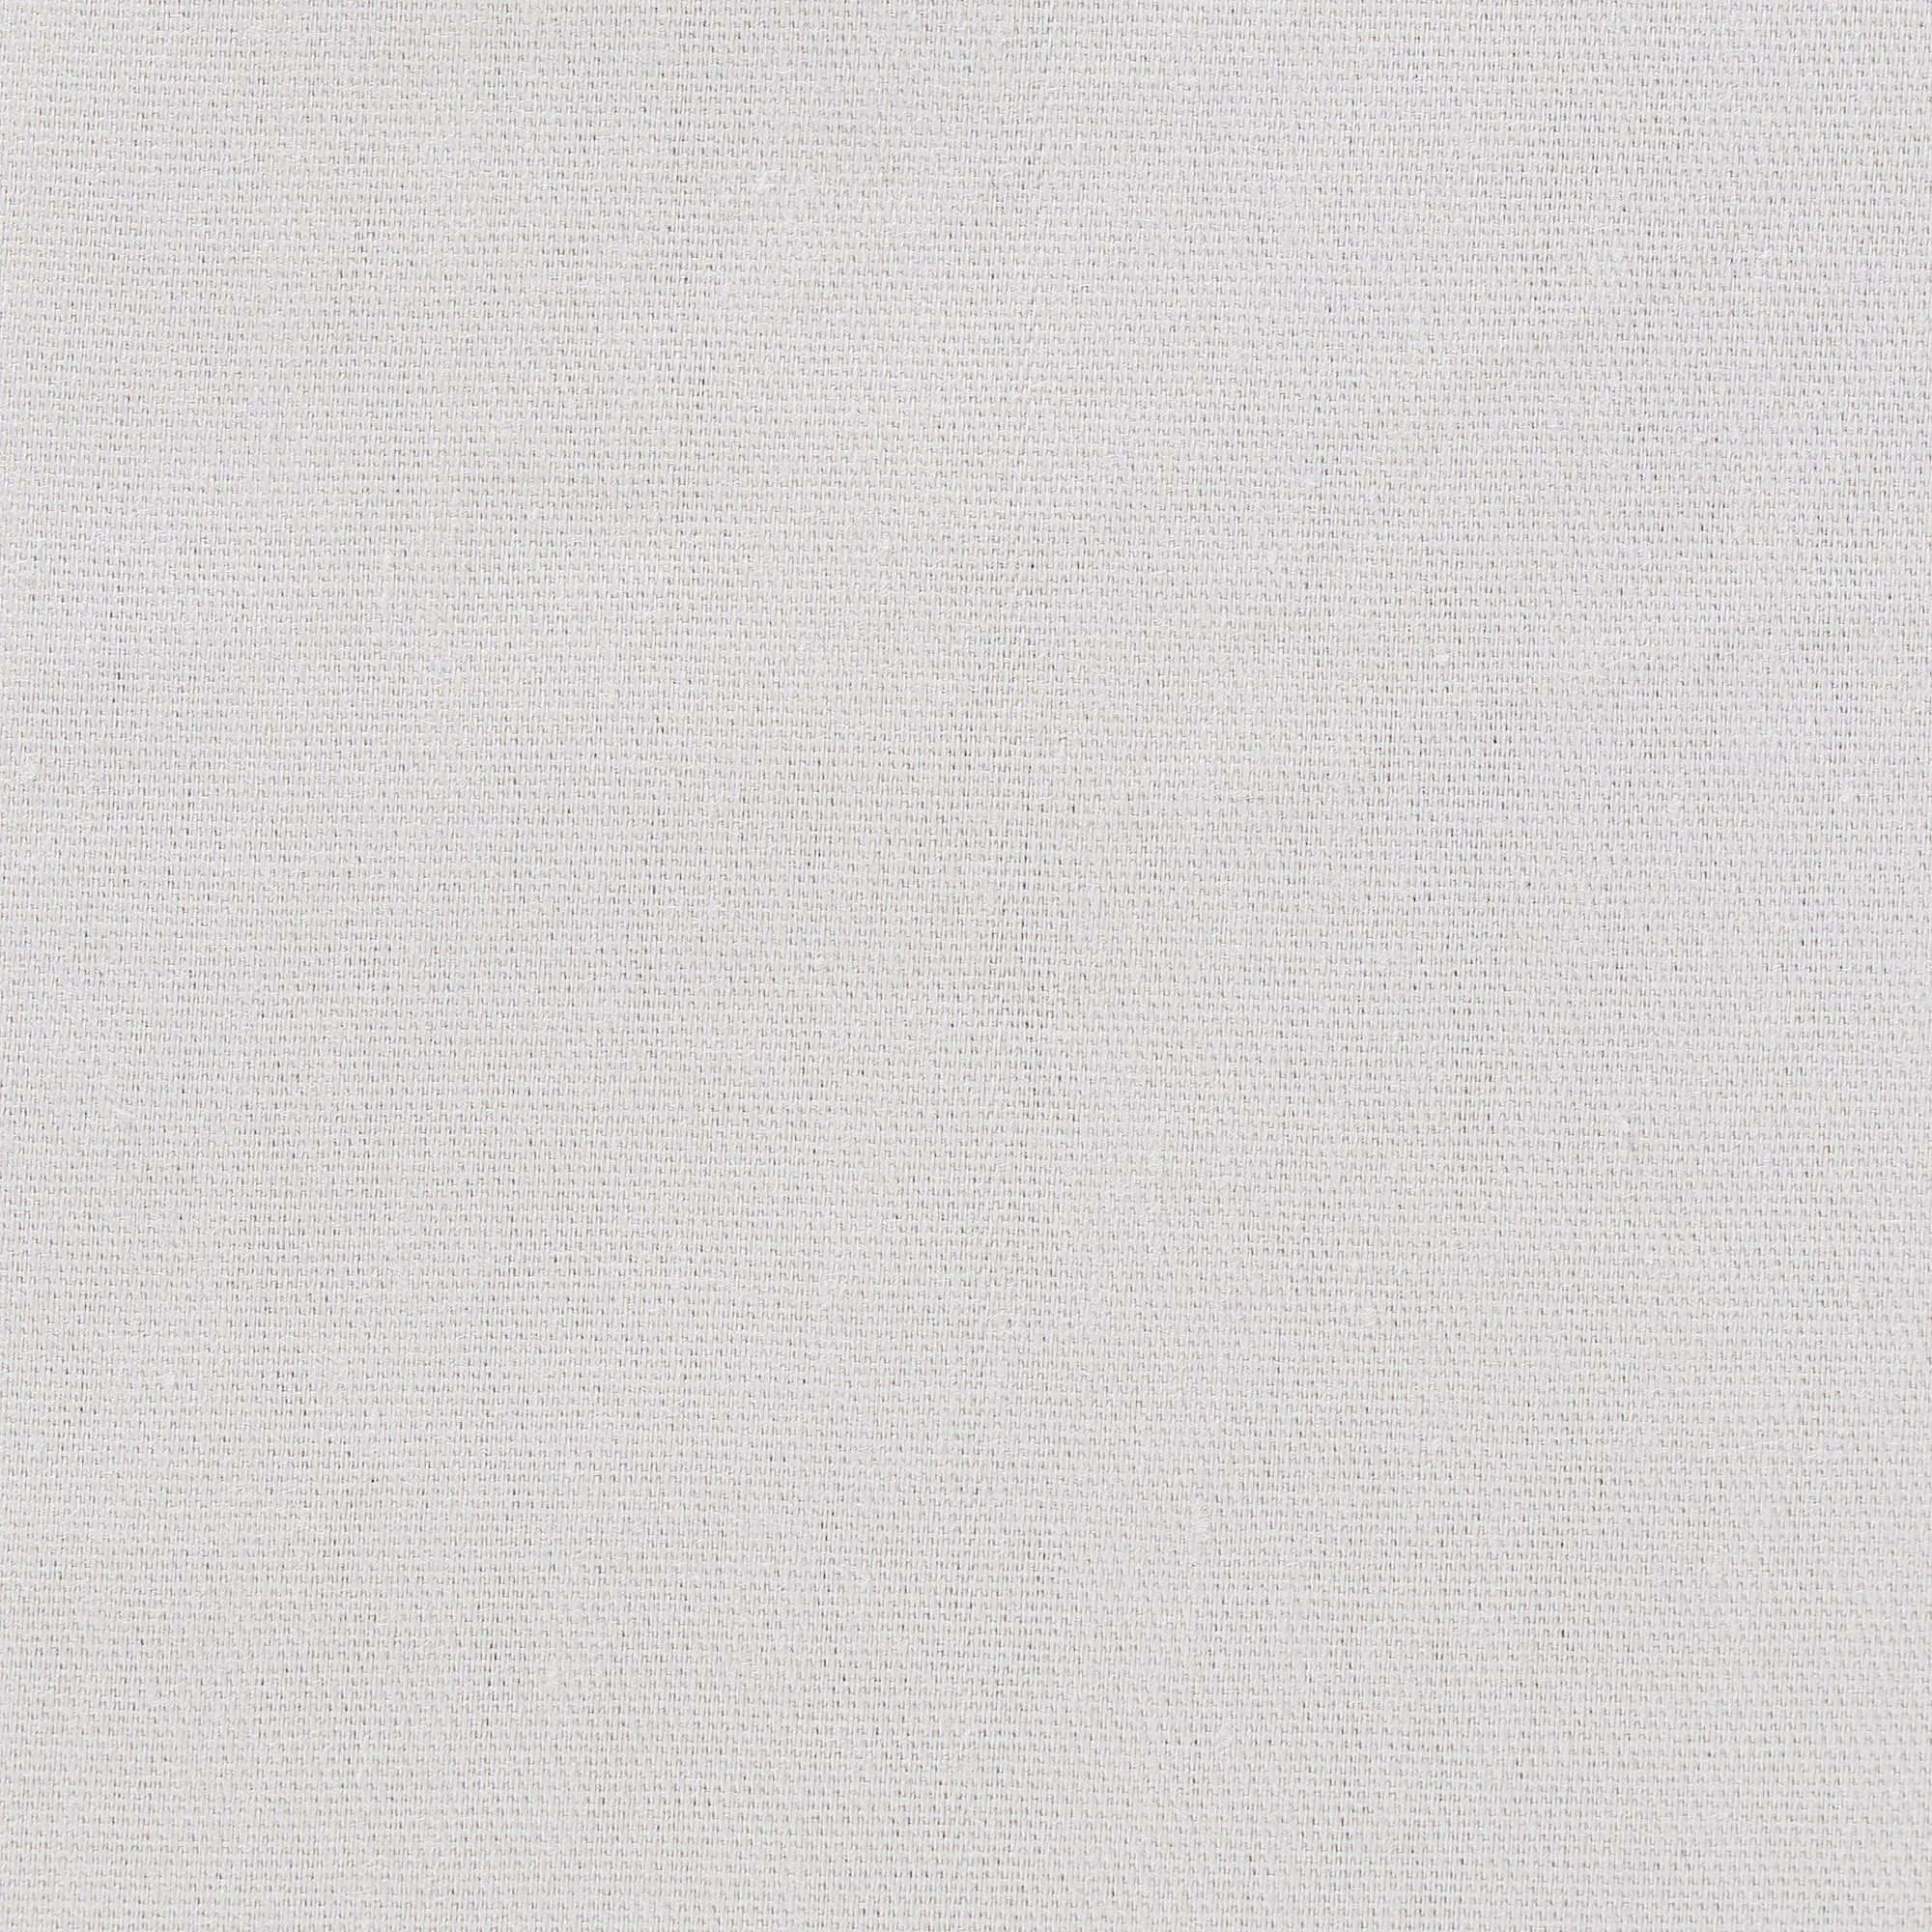 Постельный комплект MONA LIZA двуспальный евро 5205/5, цвет серый, размер Двуспальный евро - фото 2